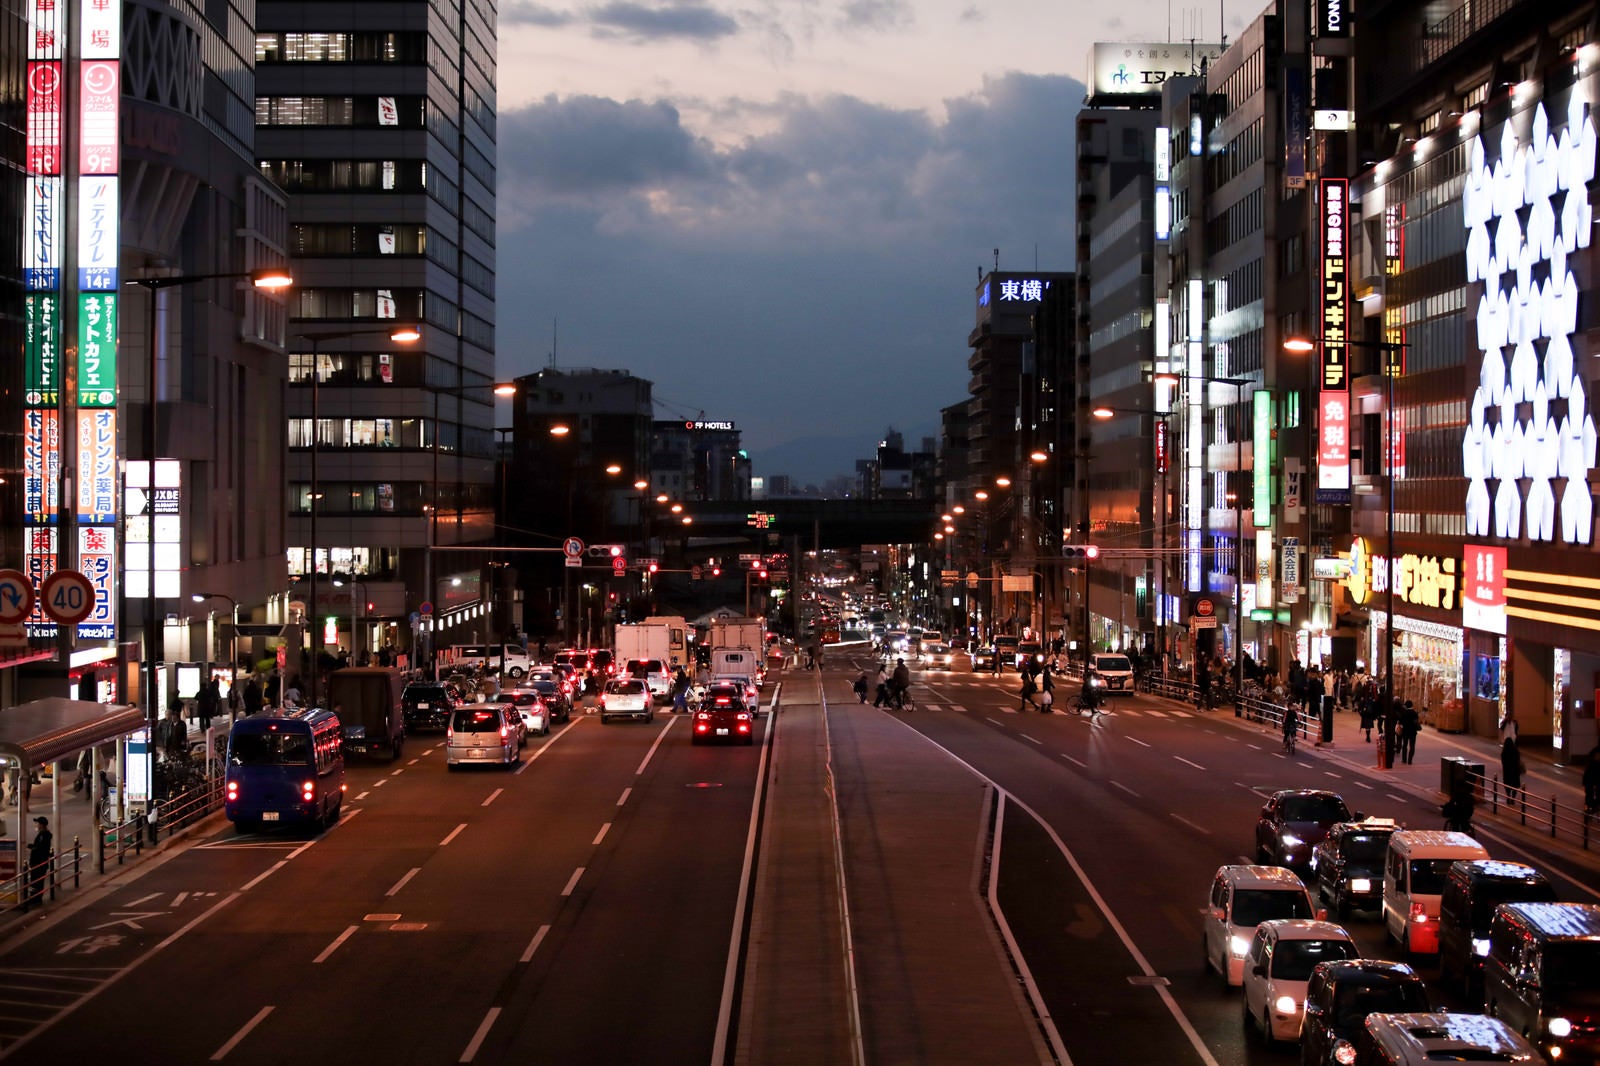 「赤信号で止まる車と街並み」の写真